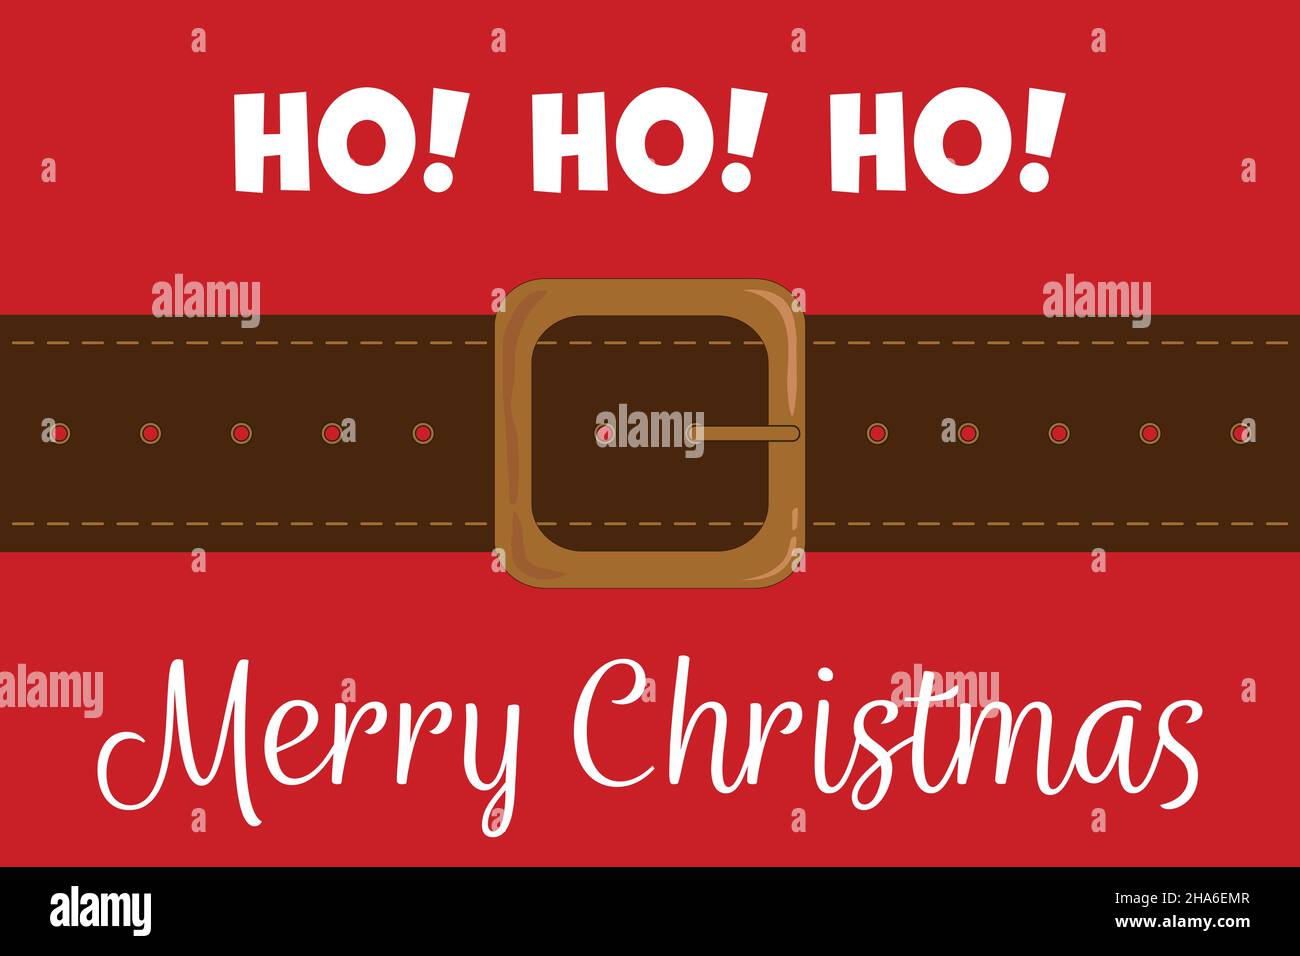 Ho! Ho! Ho! - Merry Christmas Stock Vector